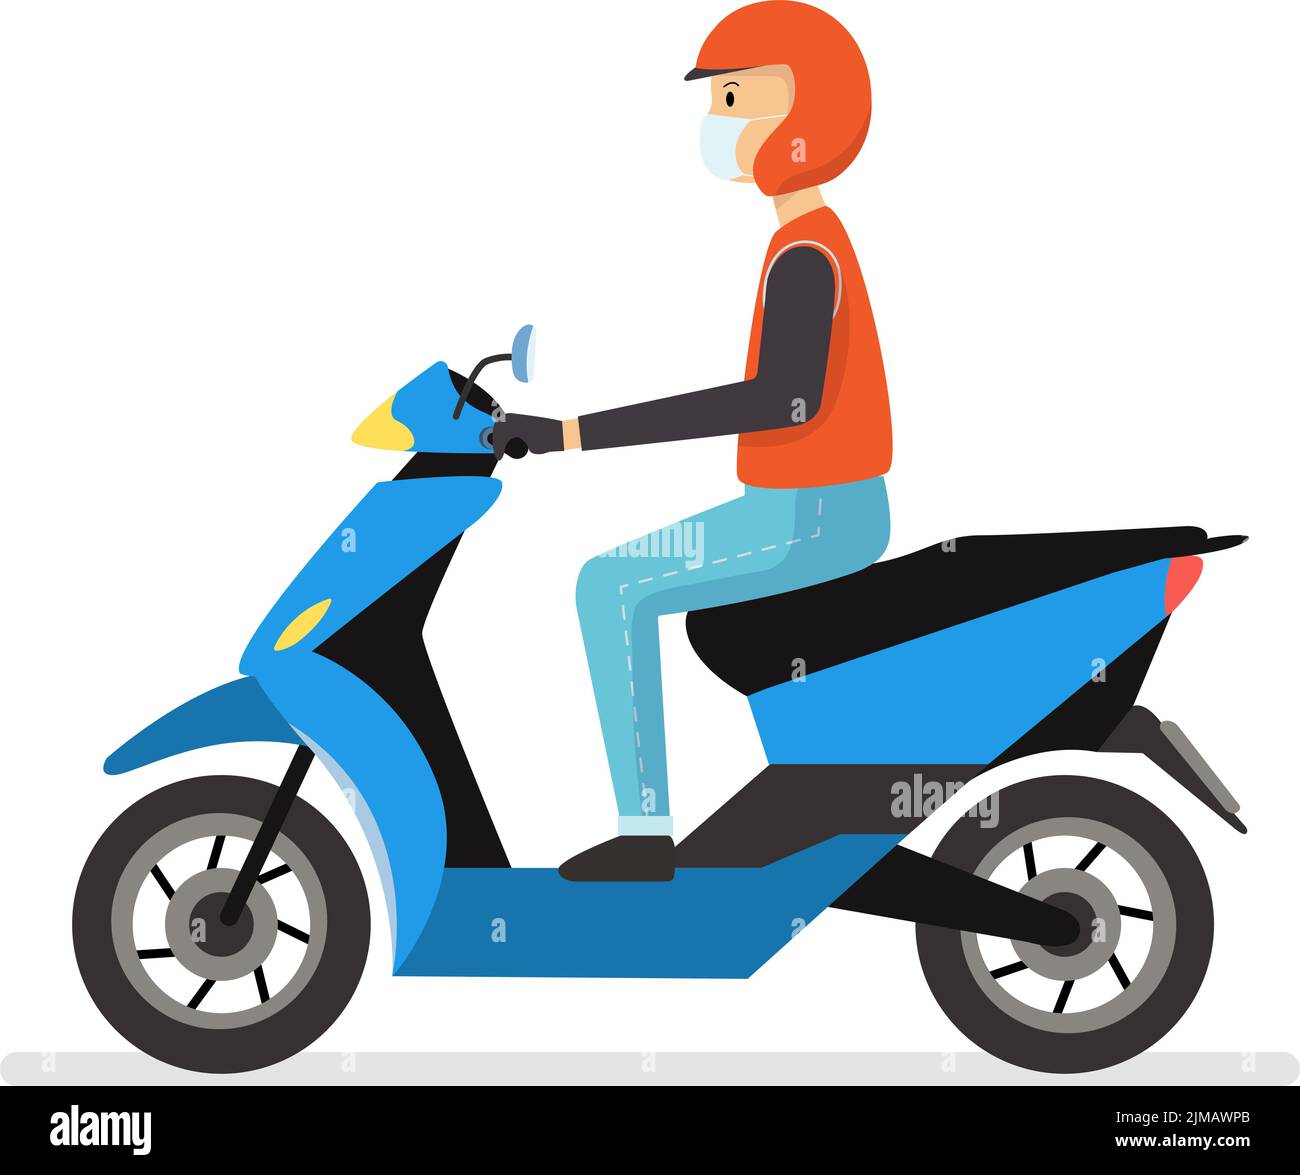 Thai moto taxi rider vecteur.Rider livraison service caricature caractère.Flat moto avec homme Illustration de Vecteur